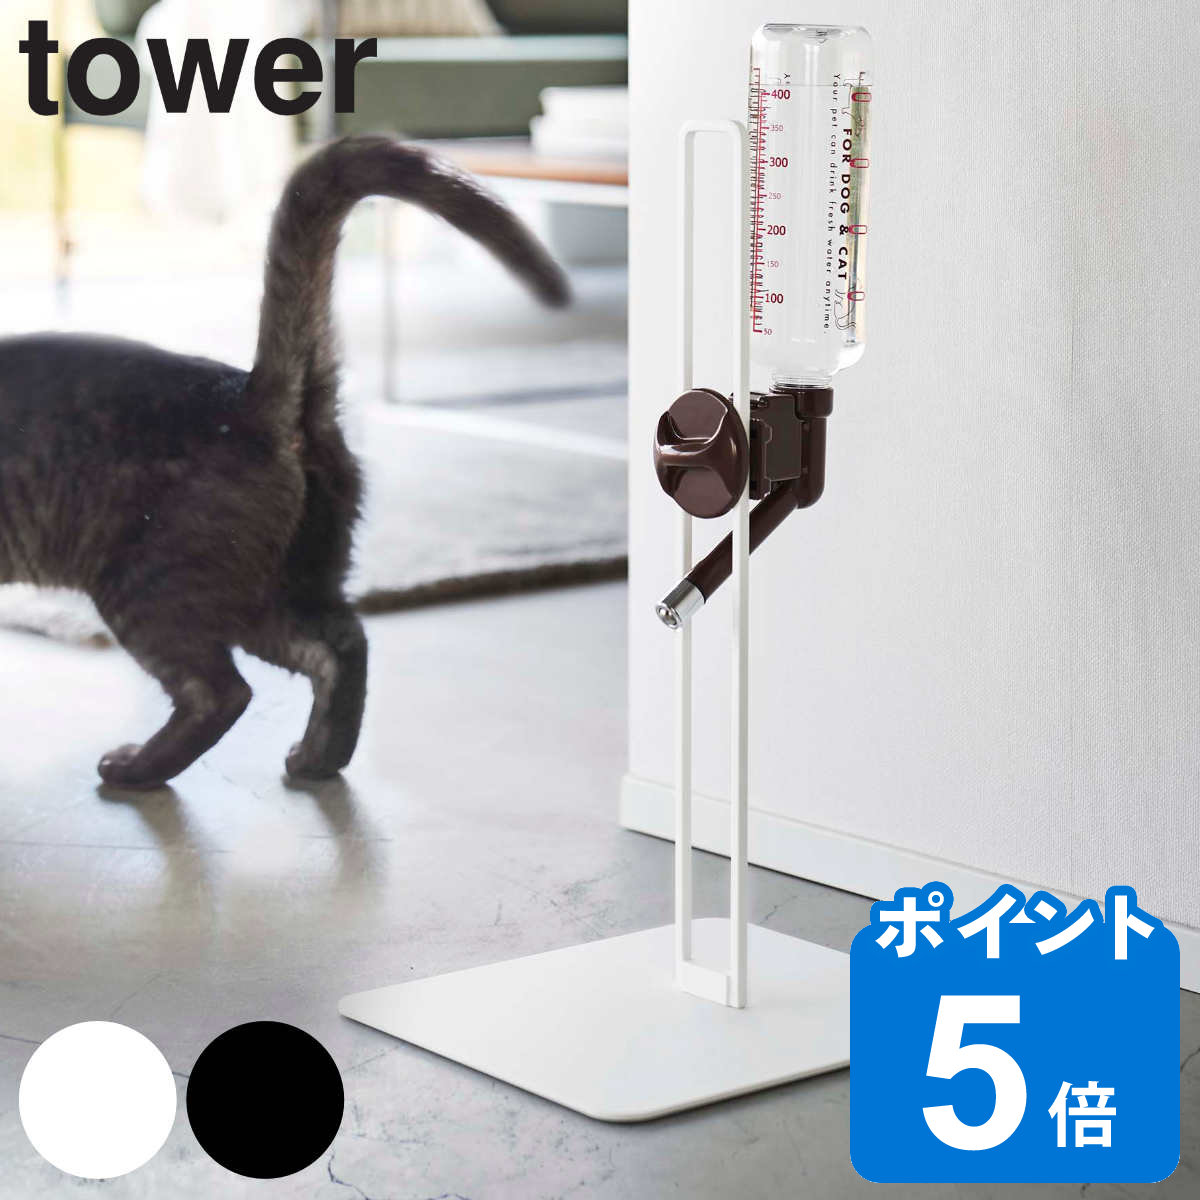 山崎実業 tower ペット用ボトル給水器スタンド タワー